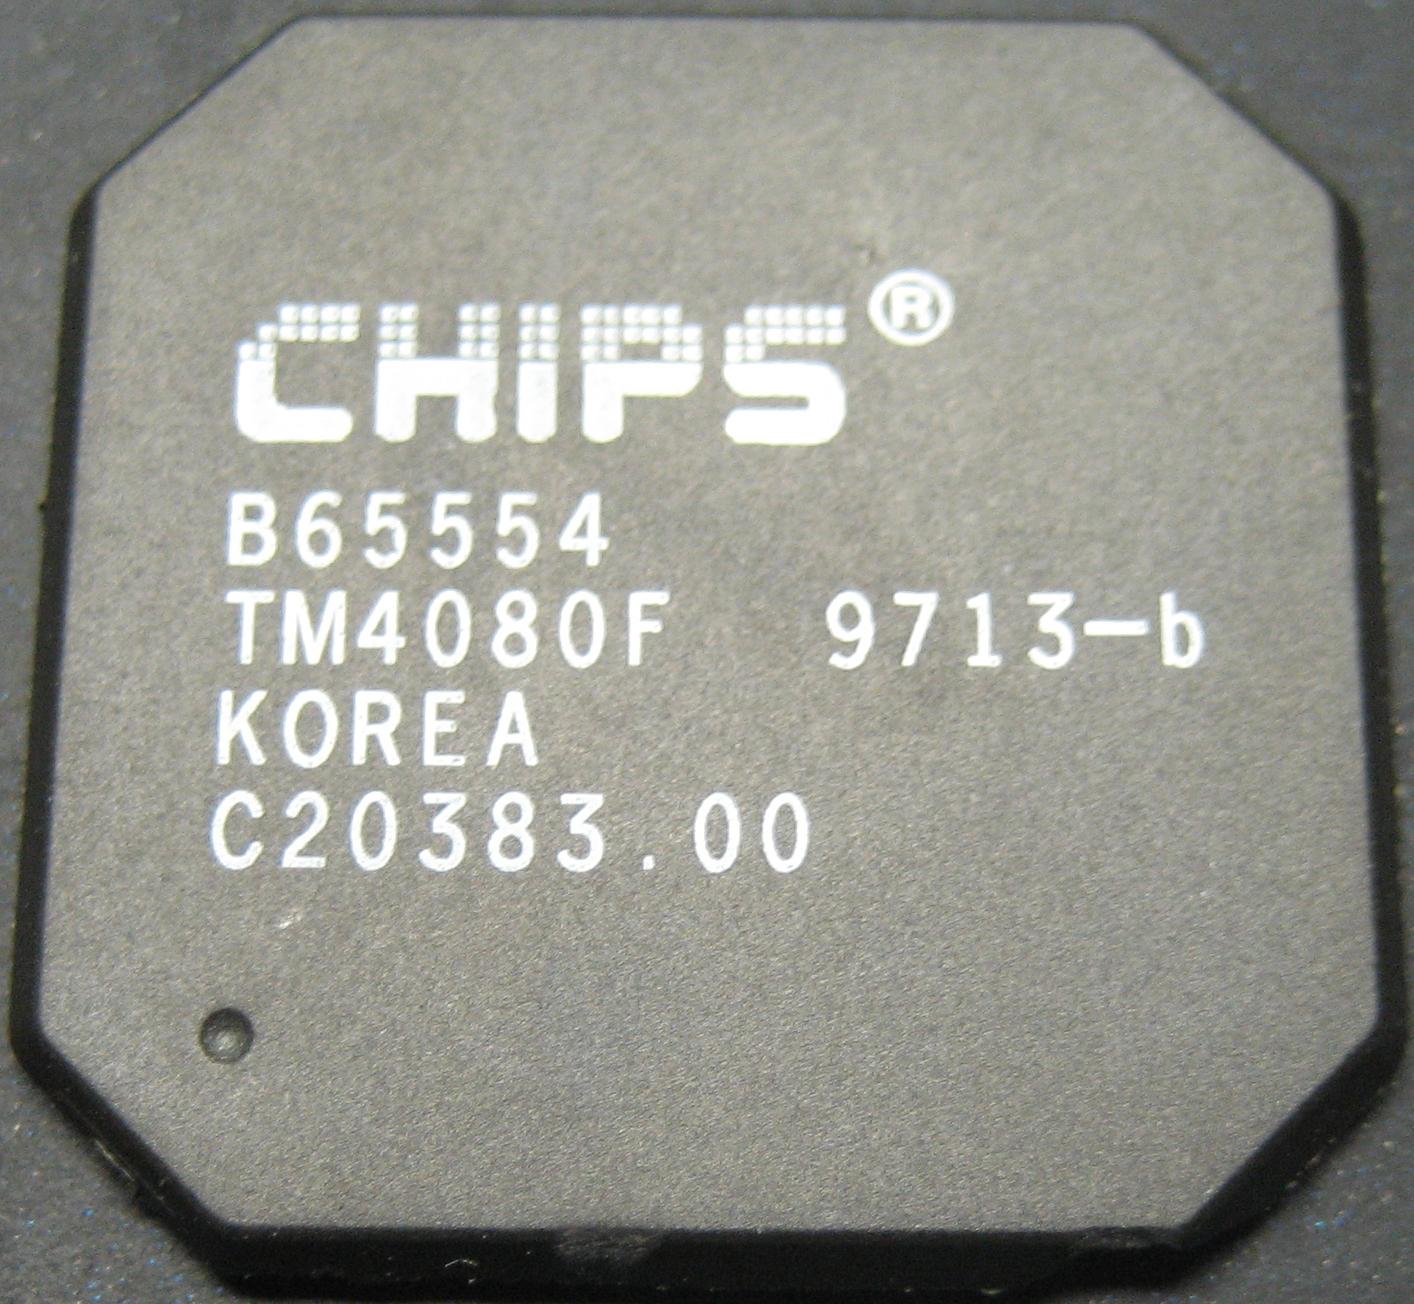 chips_b65554.jpg